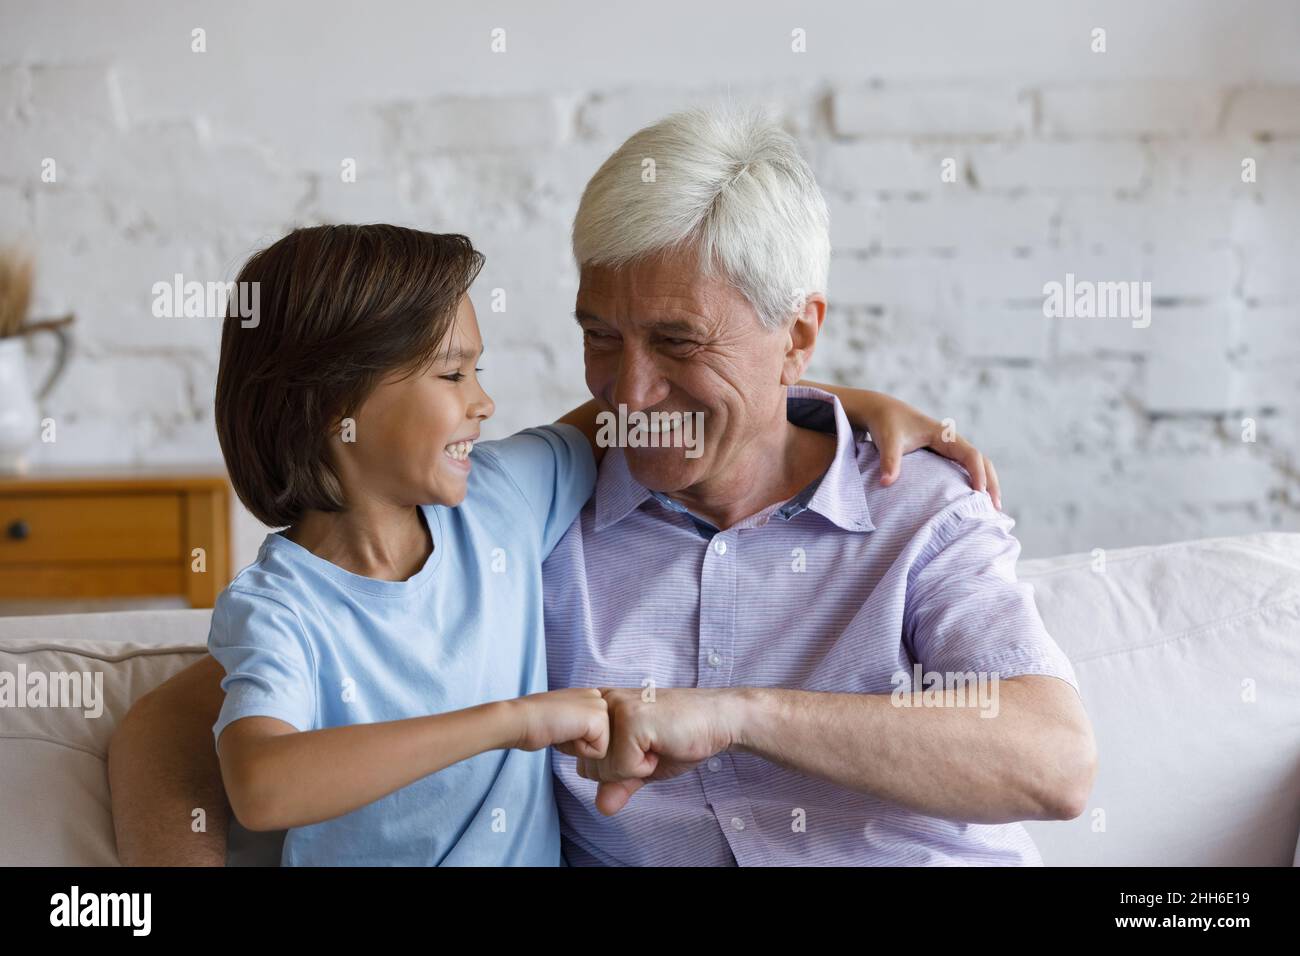 Un grand-père et un petit-fils joyeux qui donnent une petite bosse de poing amicale Banque D'Images